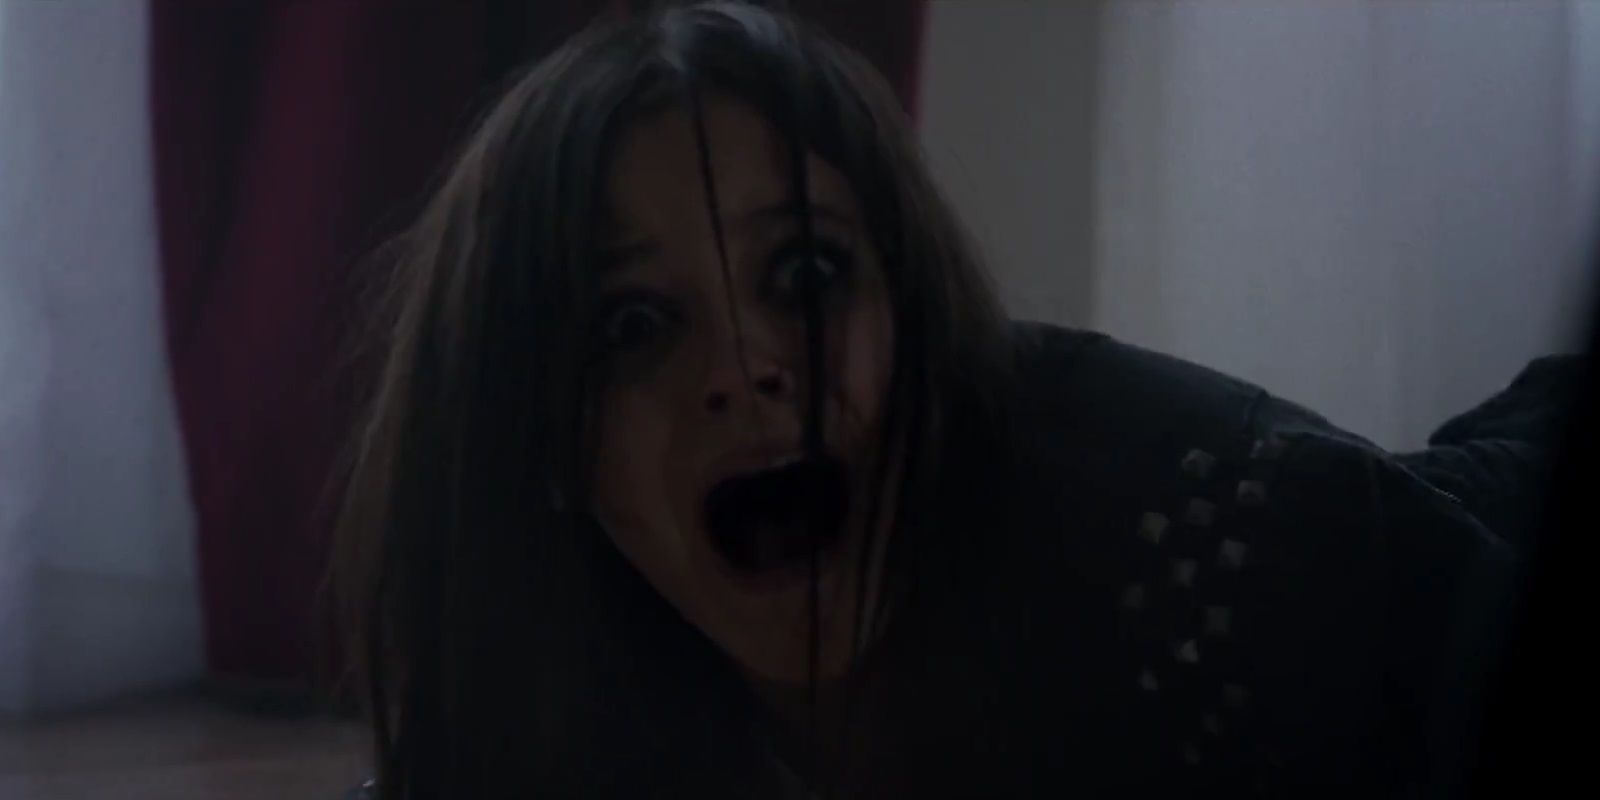 Jenna Ortega screaming in the opening scene of Studio 666